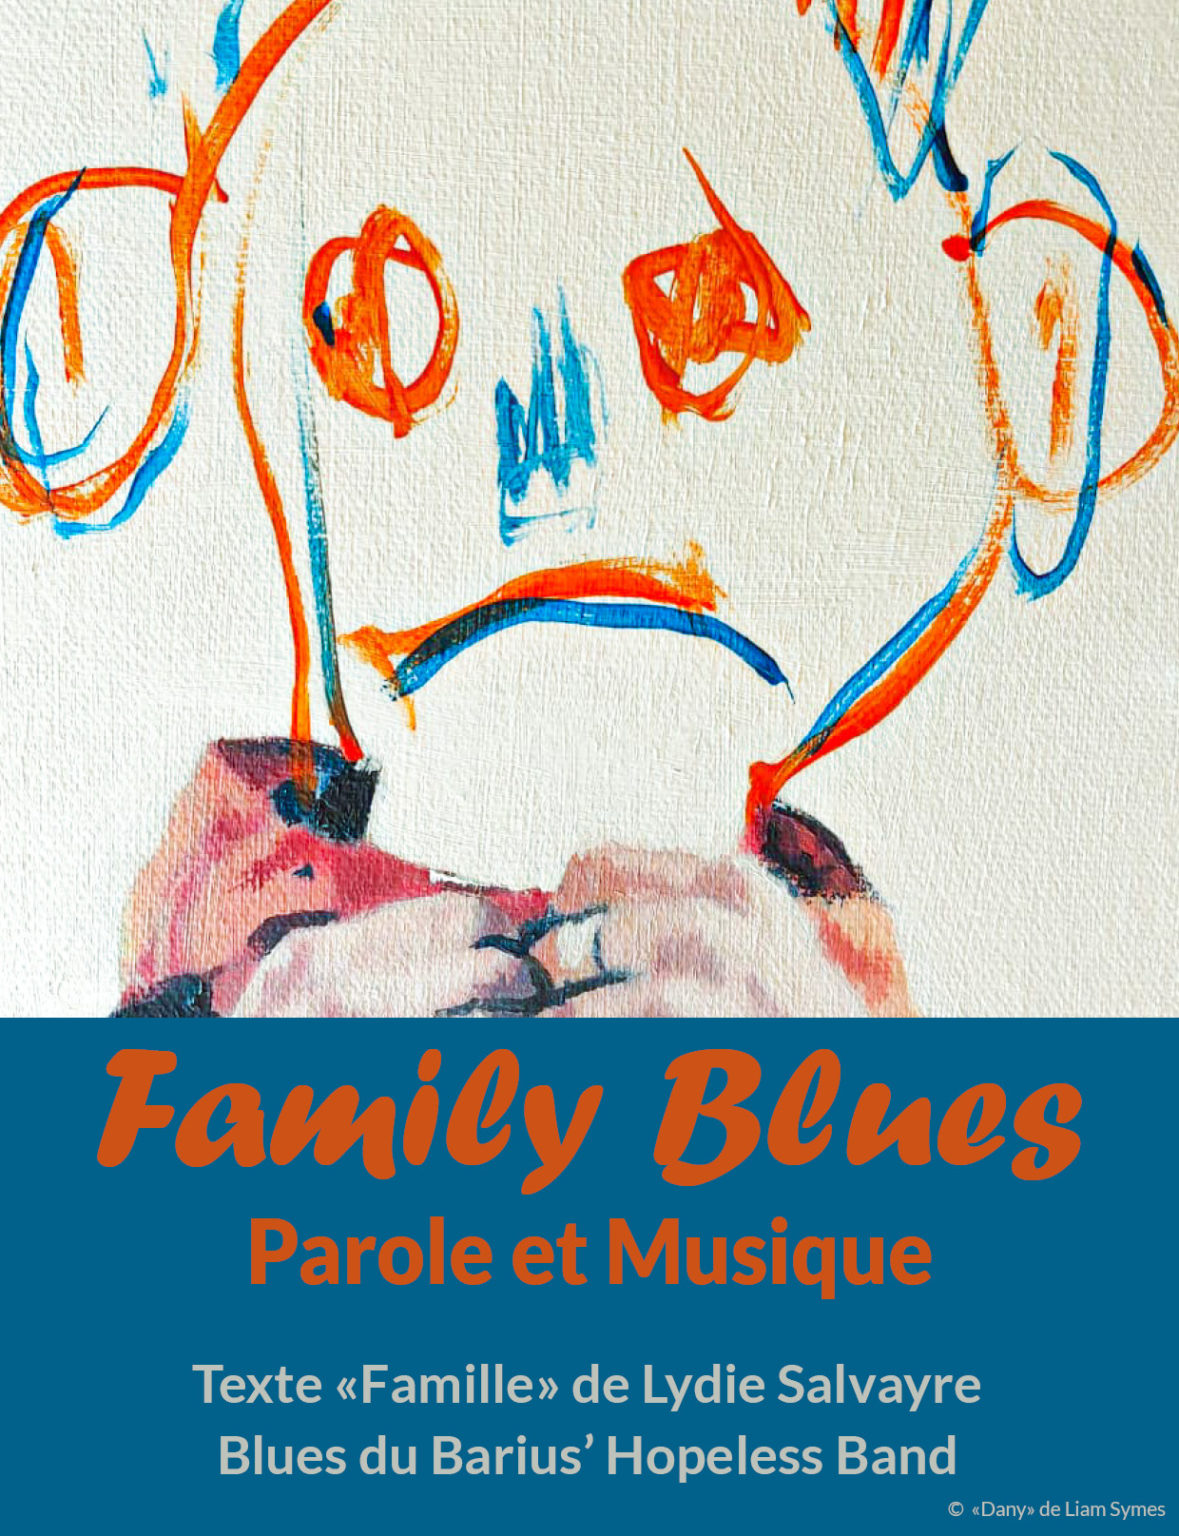 Hélécine : Spectacle "Family Blues" au Bar des Ephémères à Hélécine